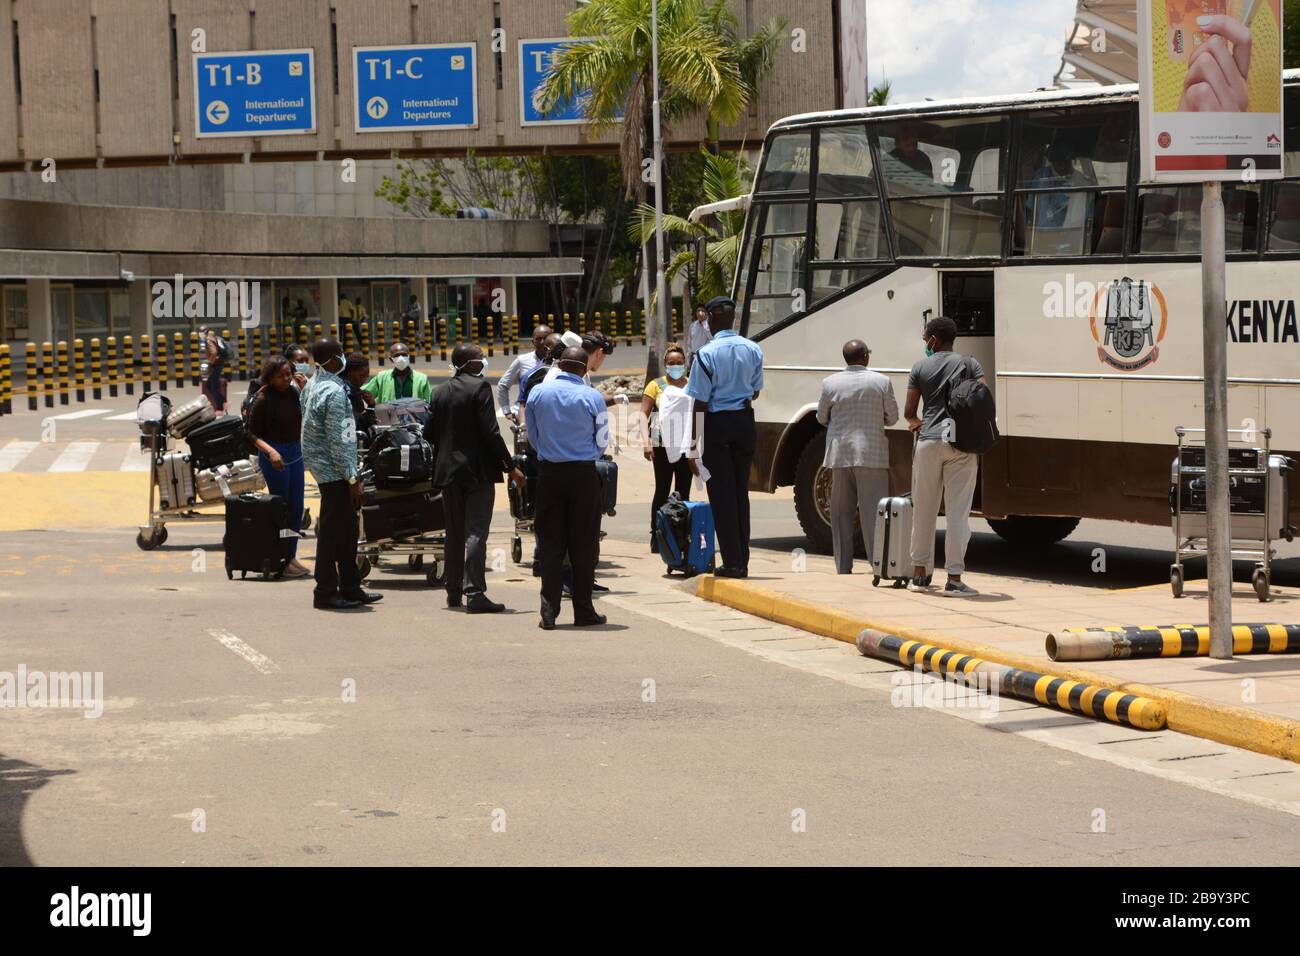 Les passagers arrivant sur un vol international à l'aéroport international de Jomo Kenyatta à Nairobi ont pris un bus qui les conduira vers divers hôtels et installations gouvernementales où ils devront être mis en quarantaine pendant 14 jours en guise de mesure préventive contre le covid-19. Jusqu'à présent, le Kenya n'a enregistré que 25 cas de coronavirus. Banque D'Images